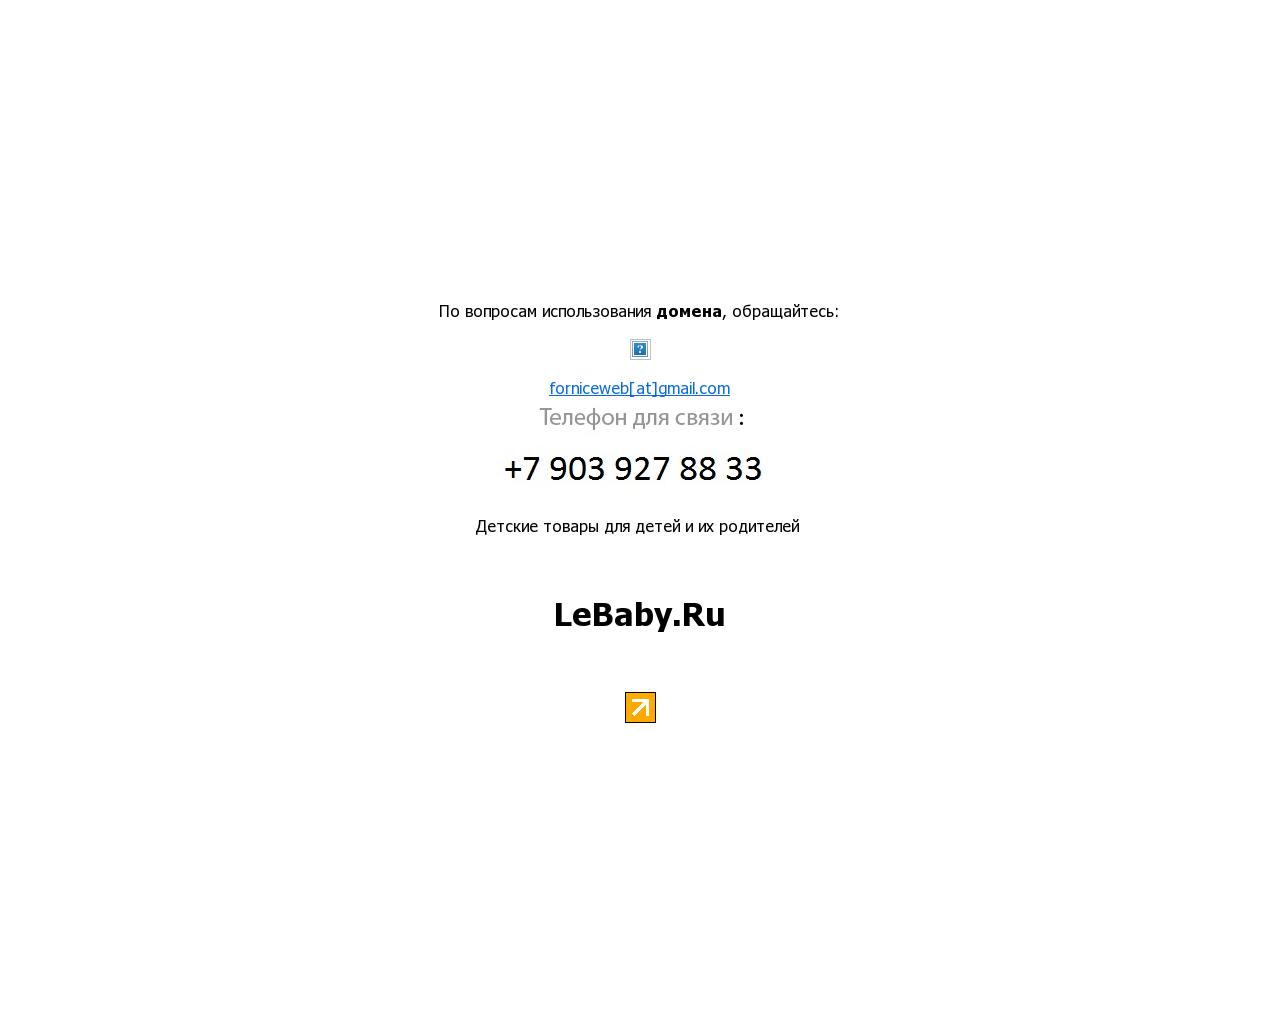 Изображение сайта lebaby.ru в разрешении 1280x1024